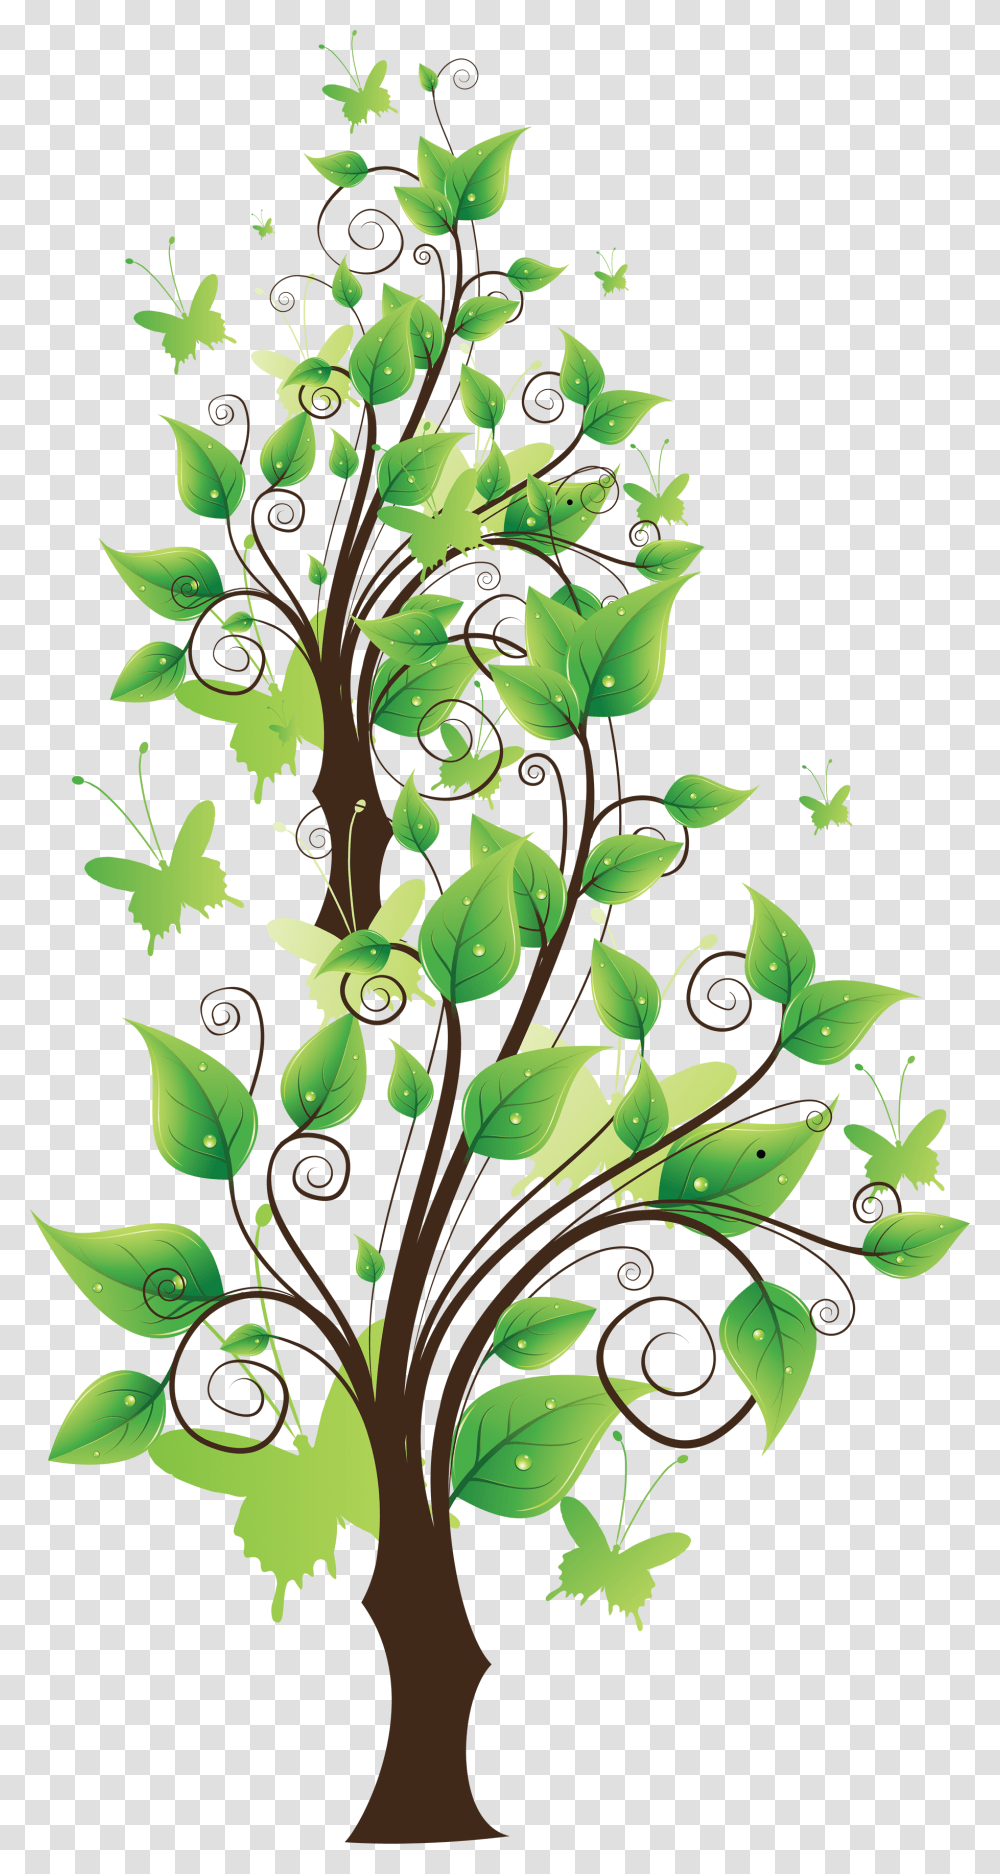 Tree Cartoon Color Derevo Vektor, Floral Design, Pattern, Pineapple Transparent Png